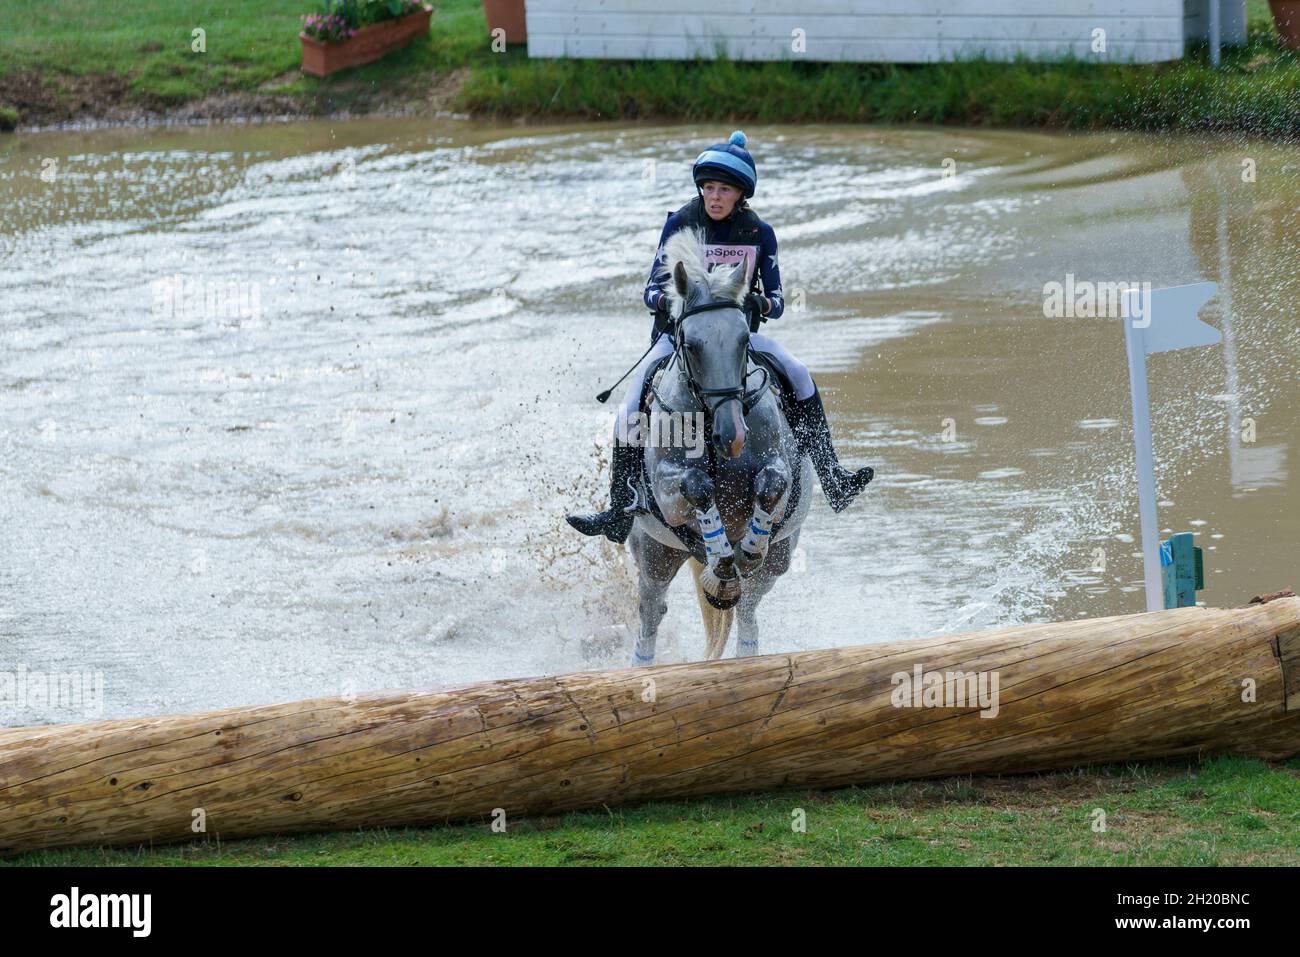 Cavallo e pilota che prende il corso di cross country e salta d'acqua in un'evocante competizione a Gloucestershire, Regno Unito, nel 2018. Foto Stock